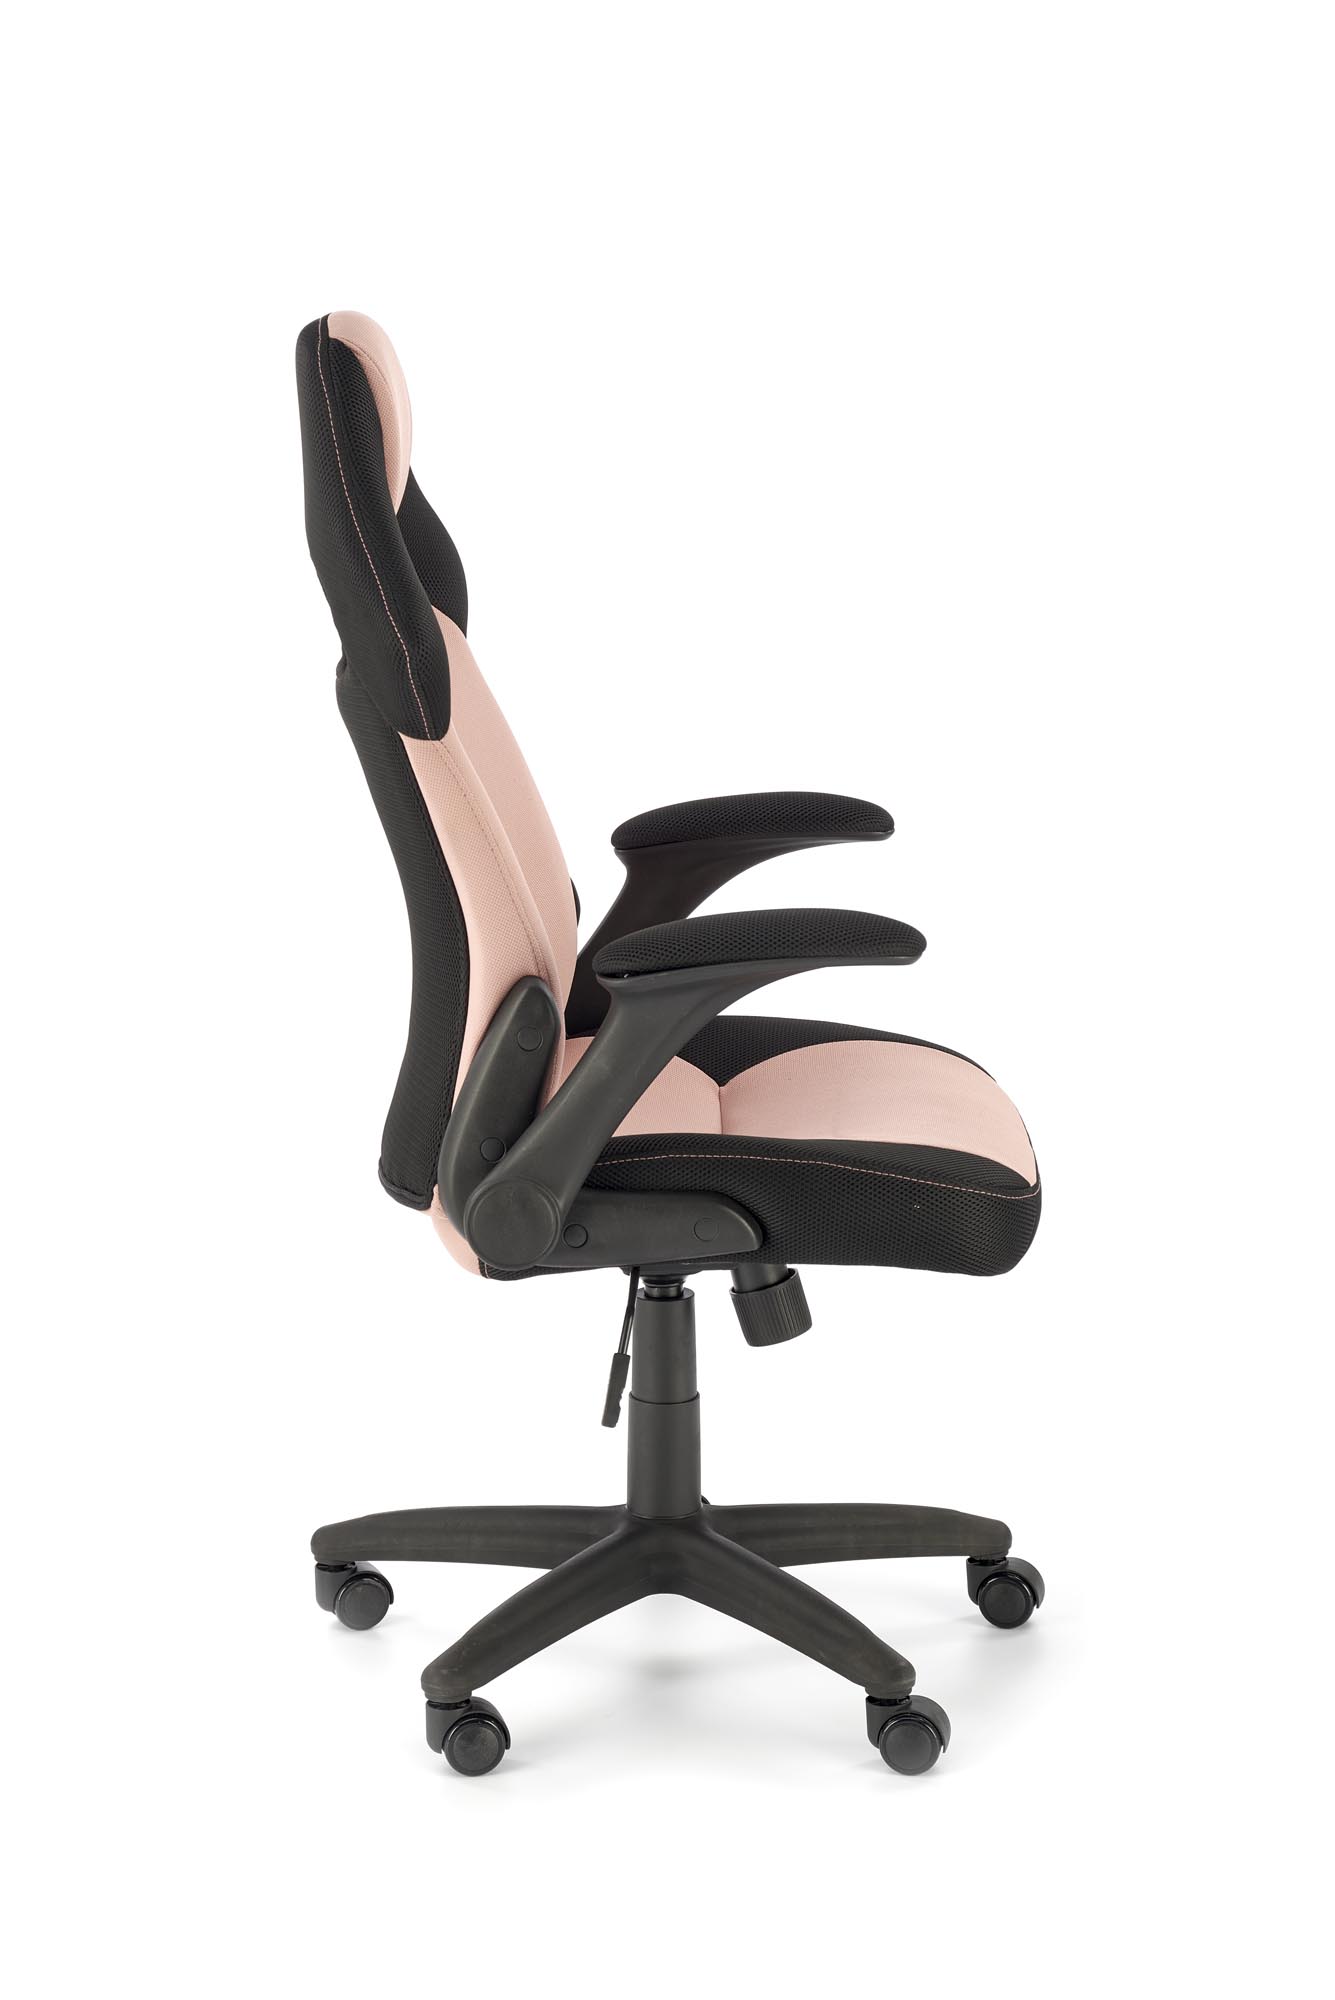 Kancelárska stolička BLOOM - ružová / čierna bloom Kreslo kancelárske Ružová / Čierny (1p=1szt)